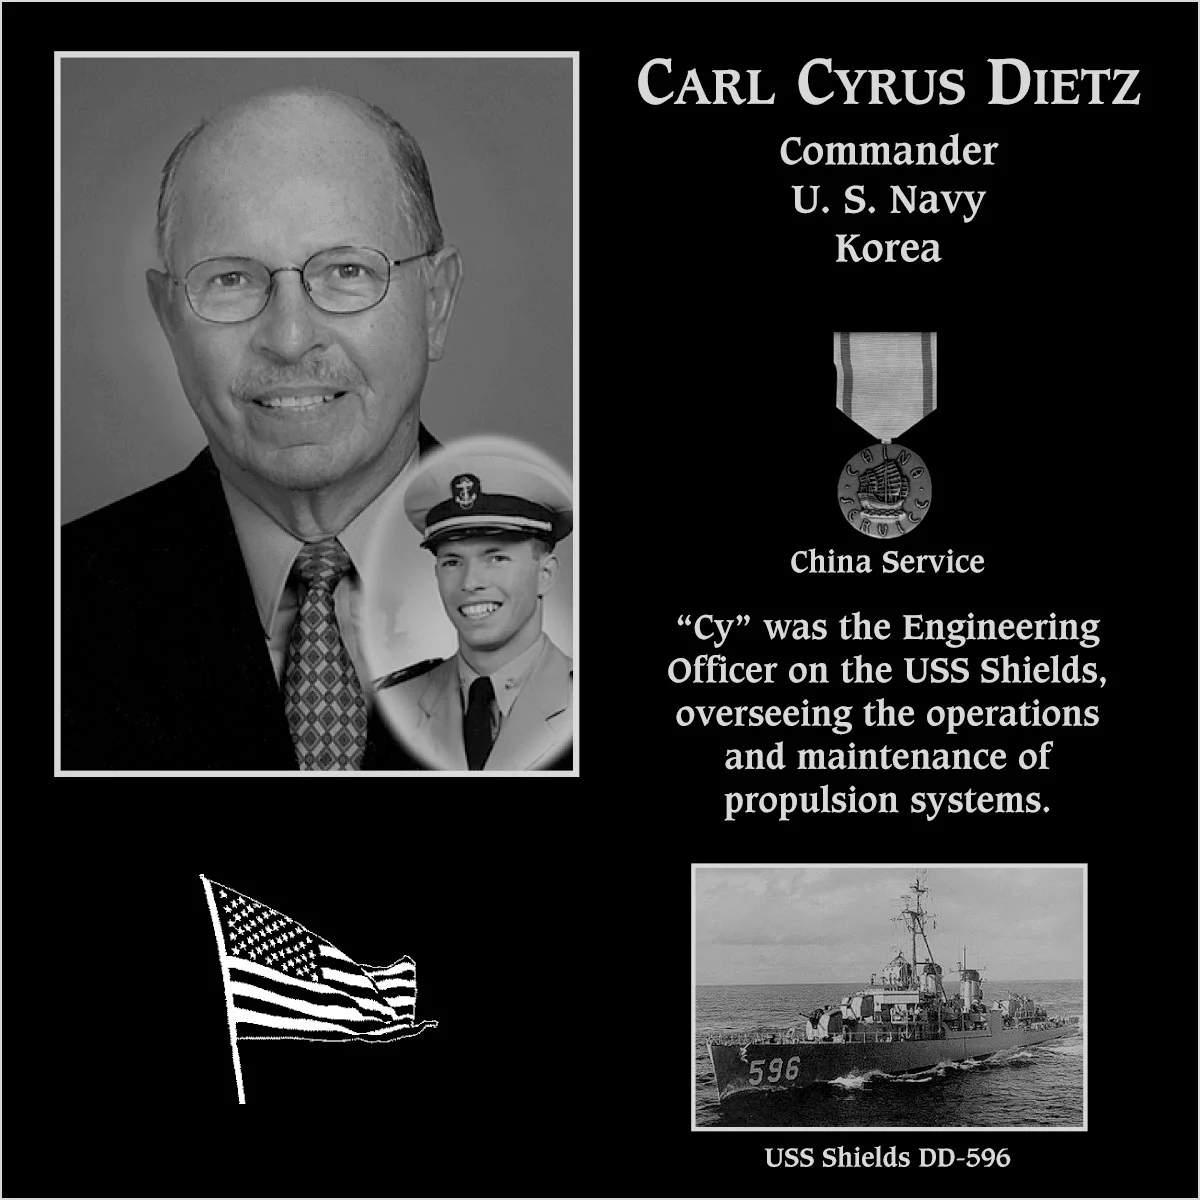 Carl Cyrus Dietz